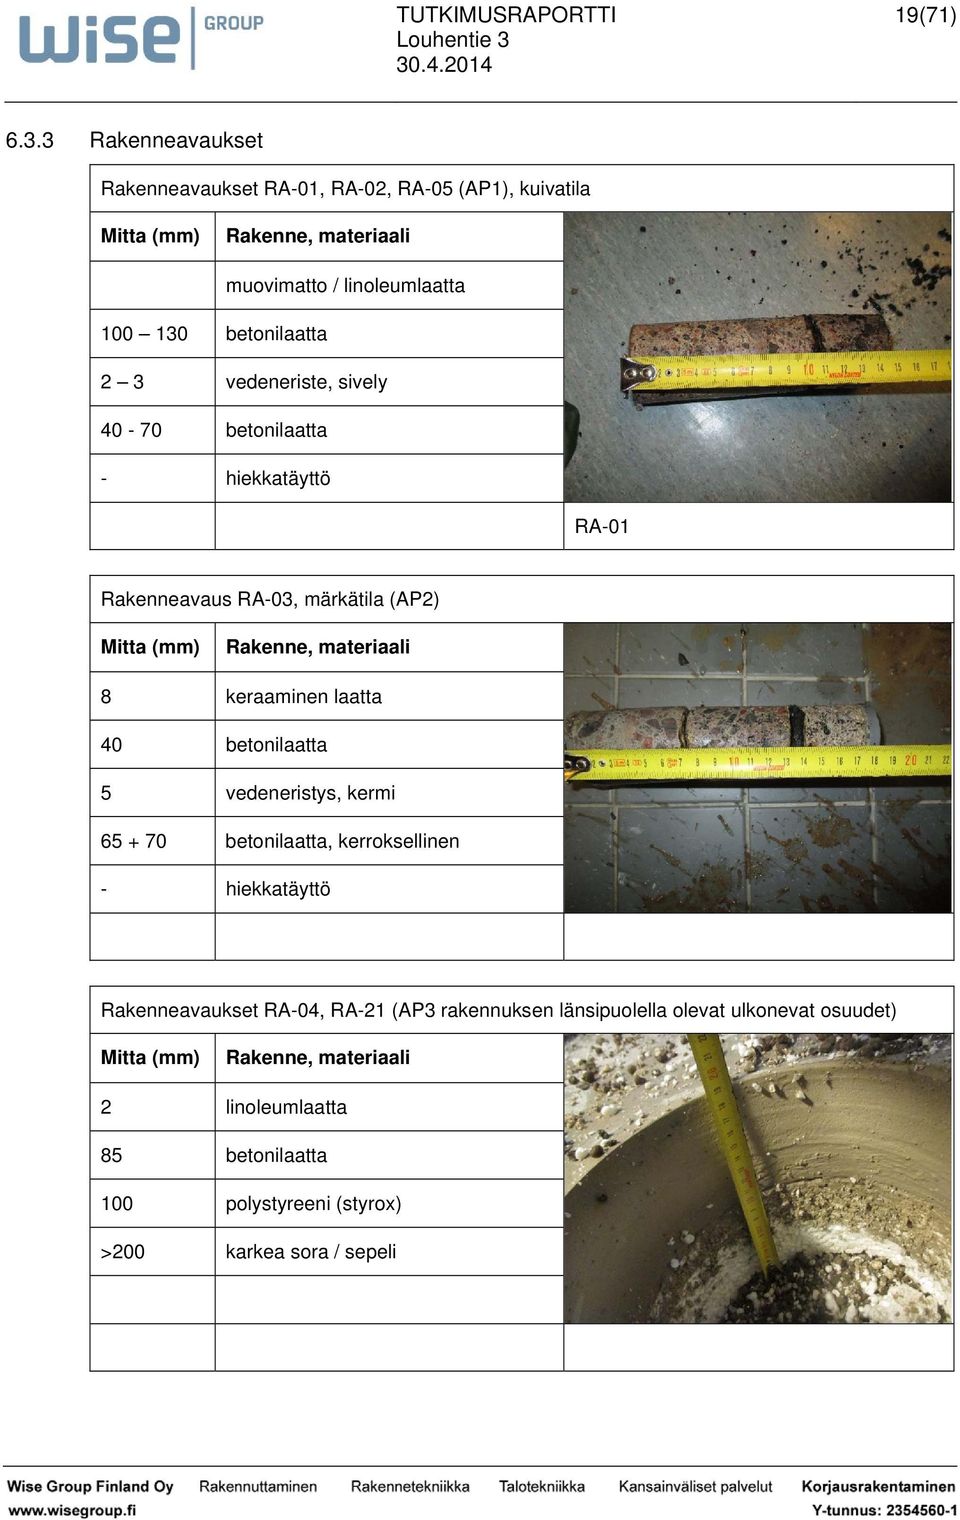 2 3 vedeneriste, sively 40-70 betonilaatta - hiekkatäyttö RA-01 Rakenneavaus RA-03, märkätila (AP2) Mitta (mm) Rakenne, materiaali 8 keraaminen laatta